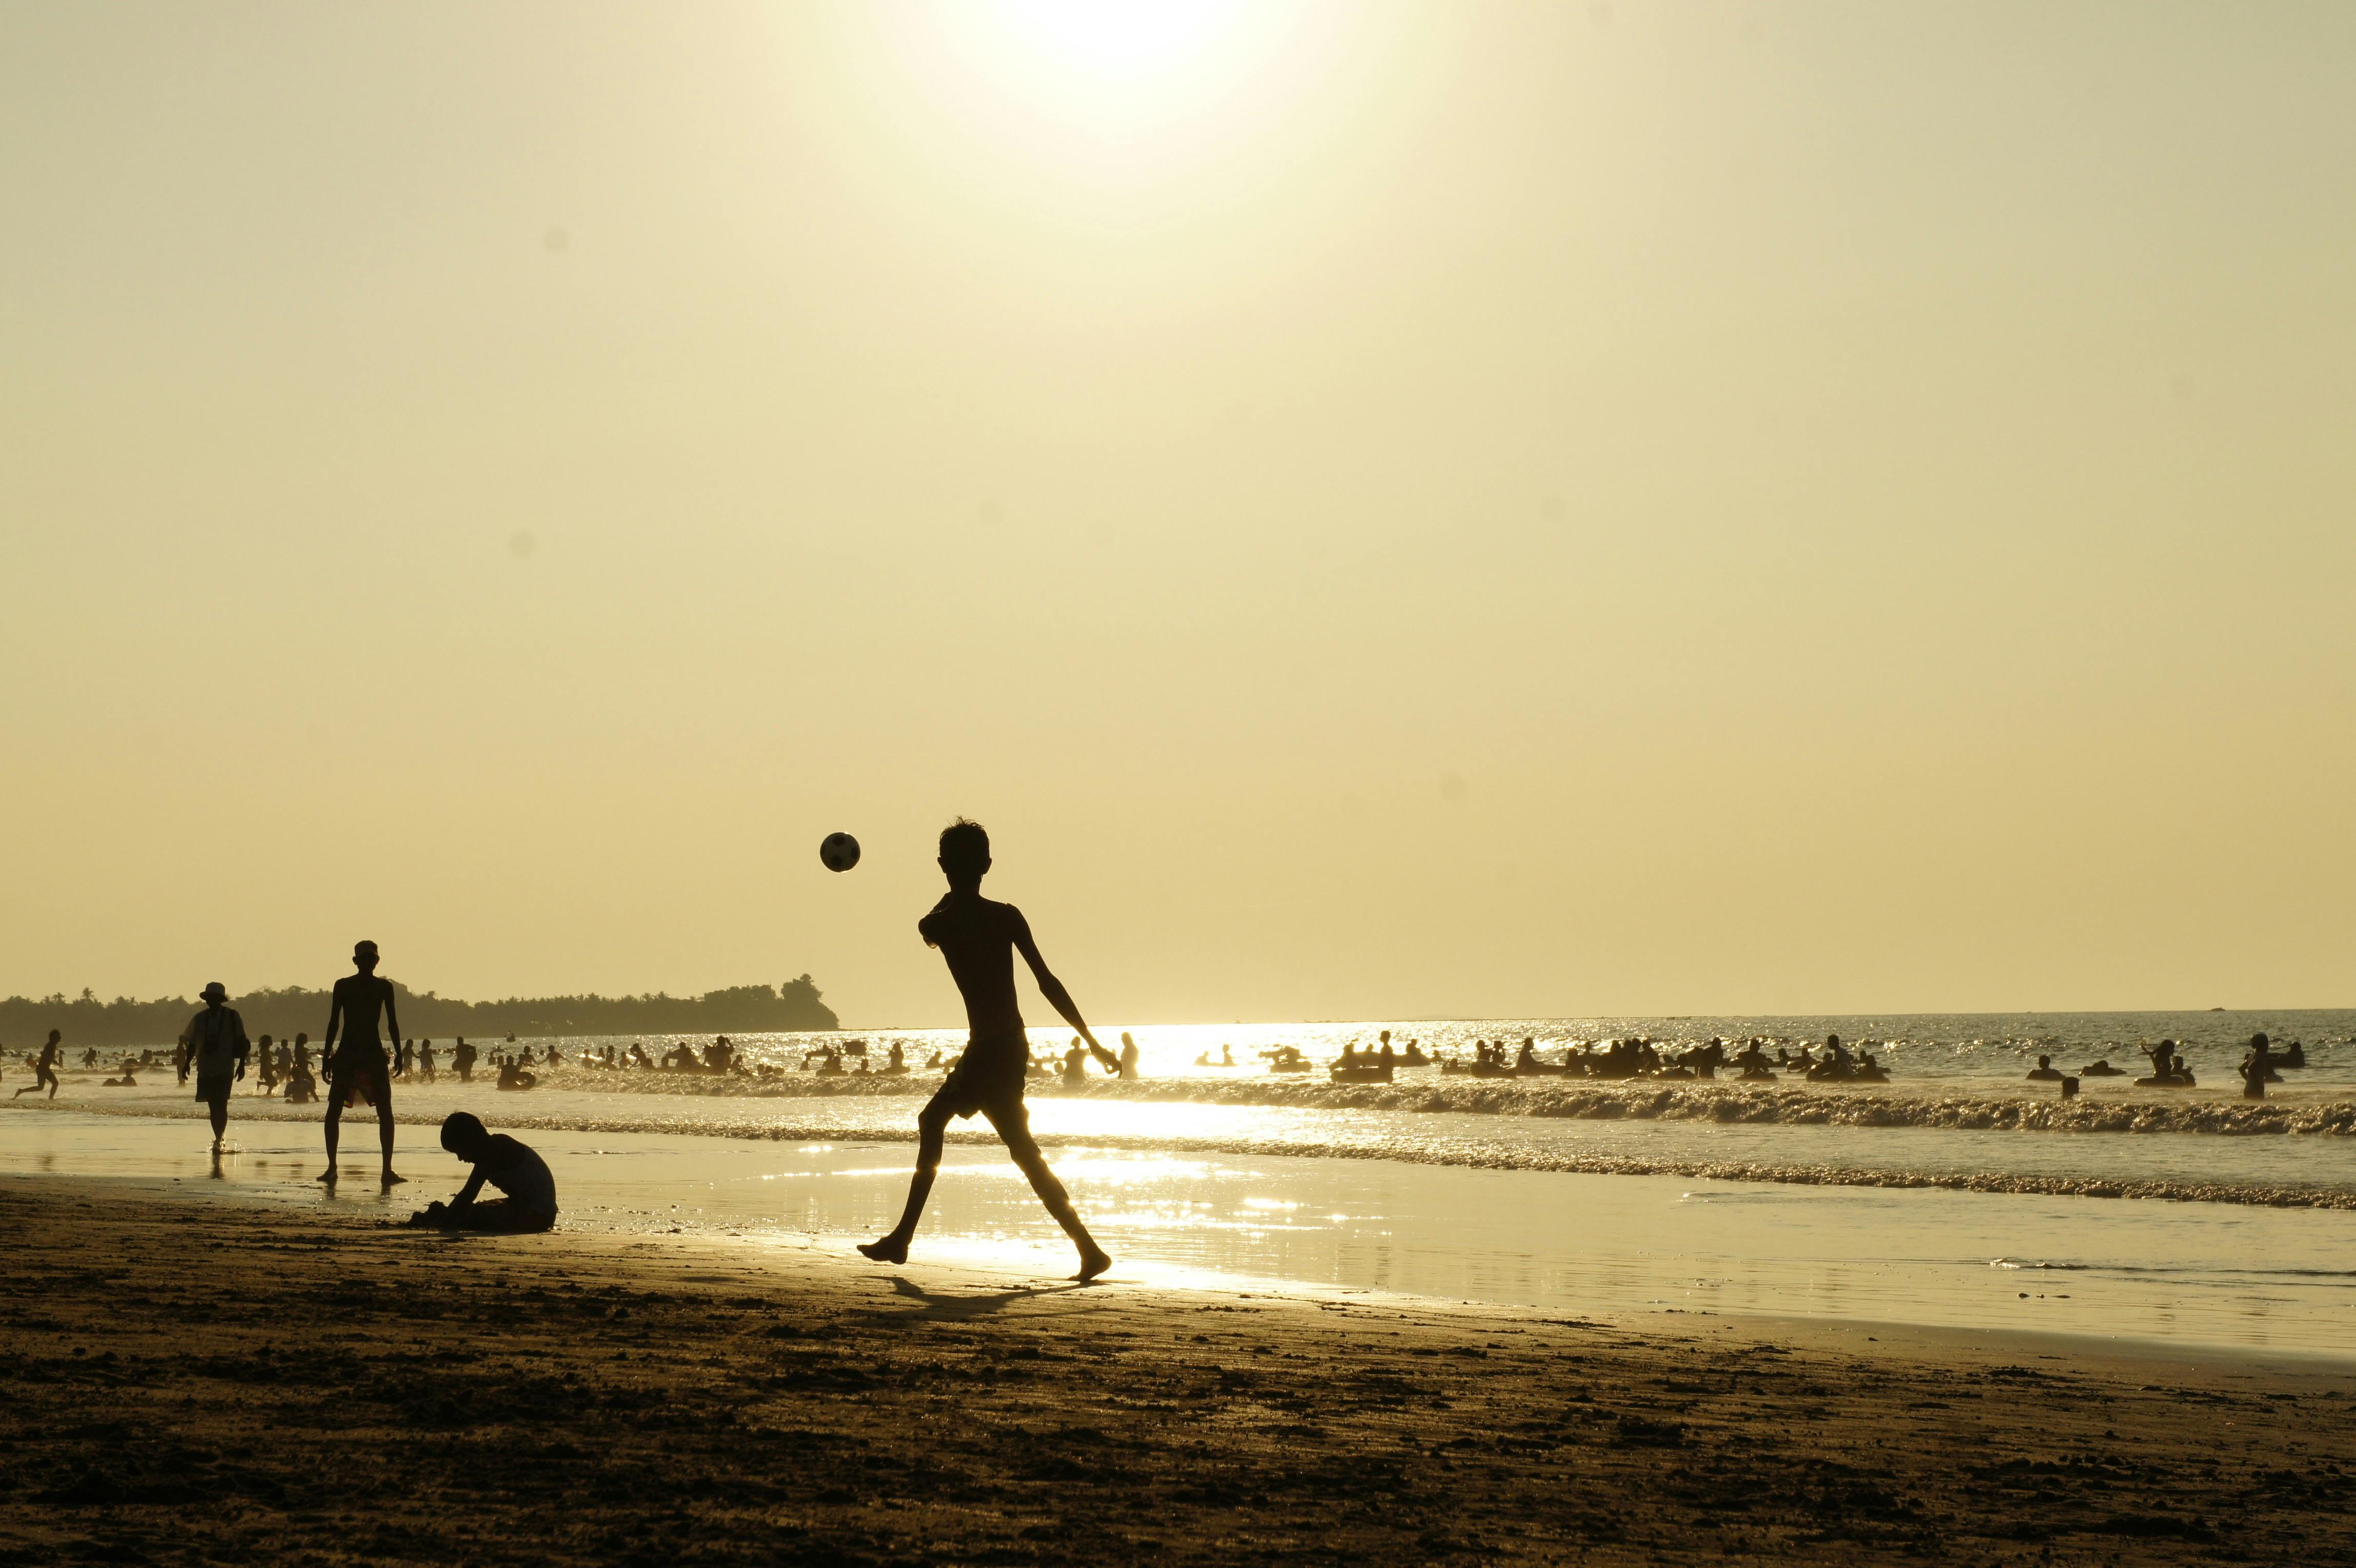 Imagem de crianças jogando bola na beira da praia.